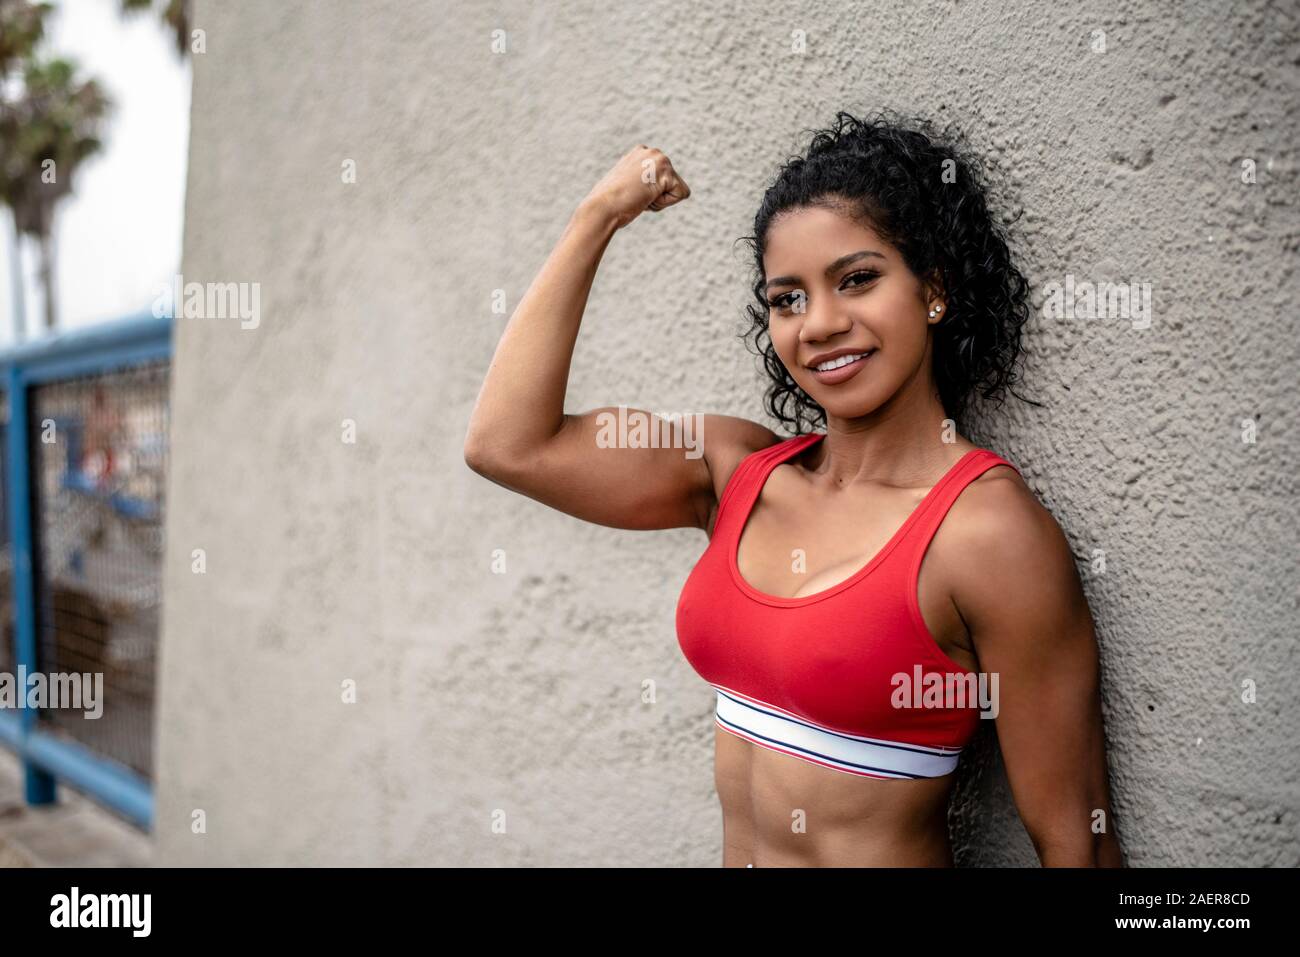 Female fitness model flexes her arm Stock Photo